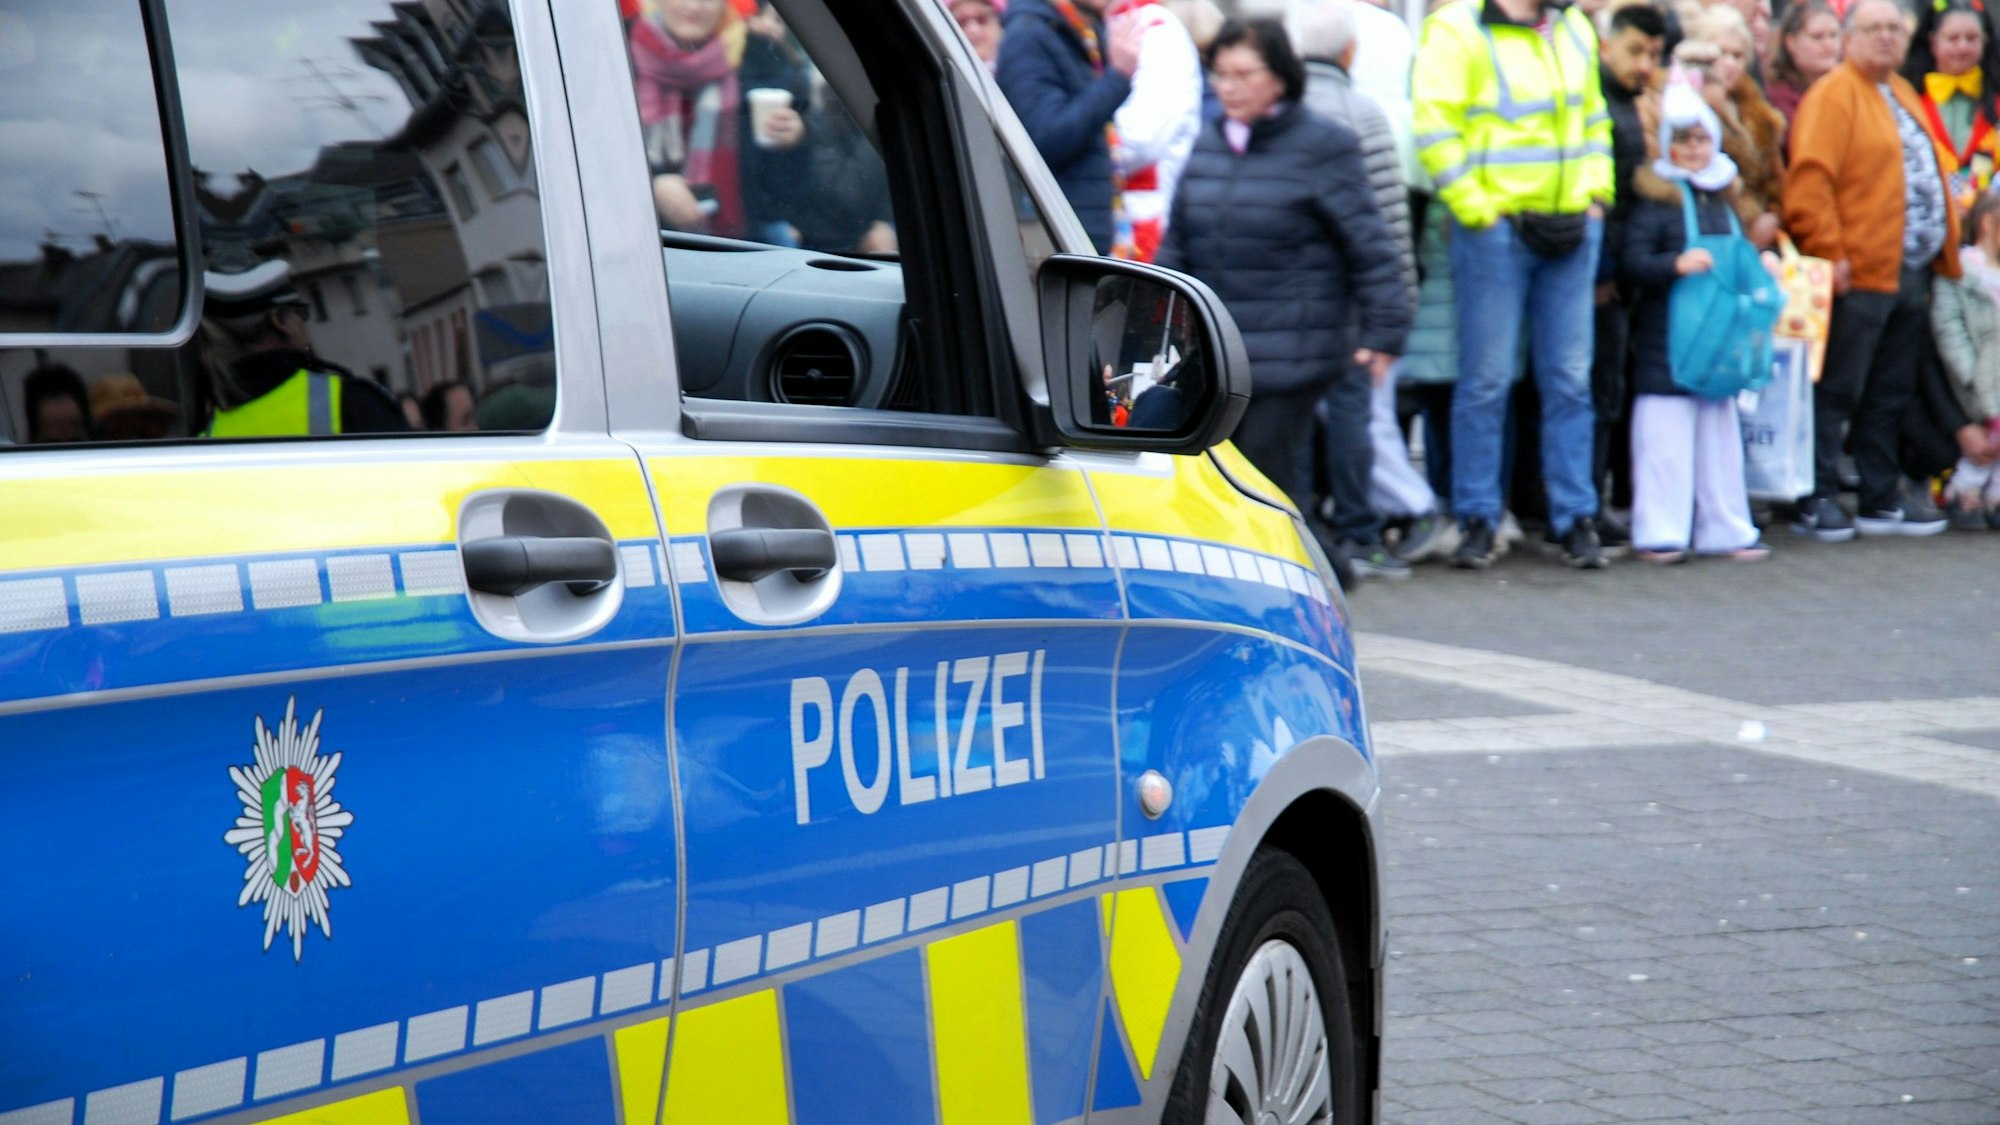 Zu sehen ist ein Polizeifahrzeug bei dem Karnevalszug in Brühl.